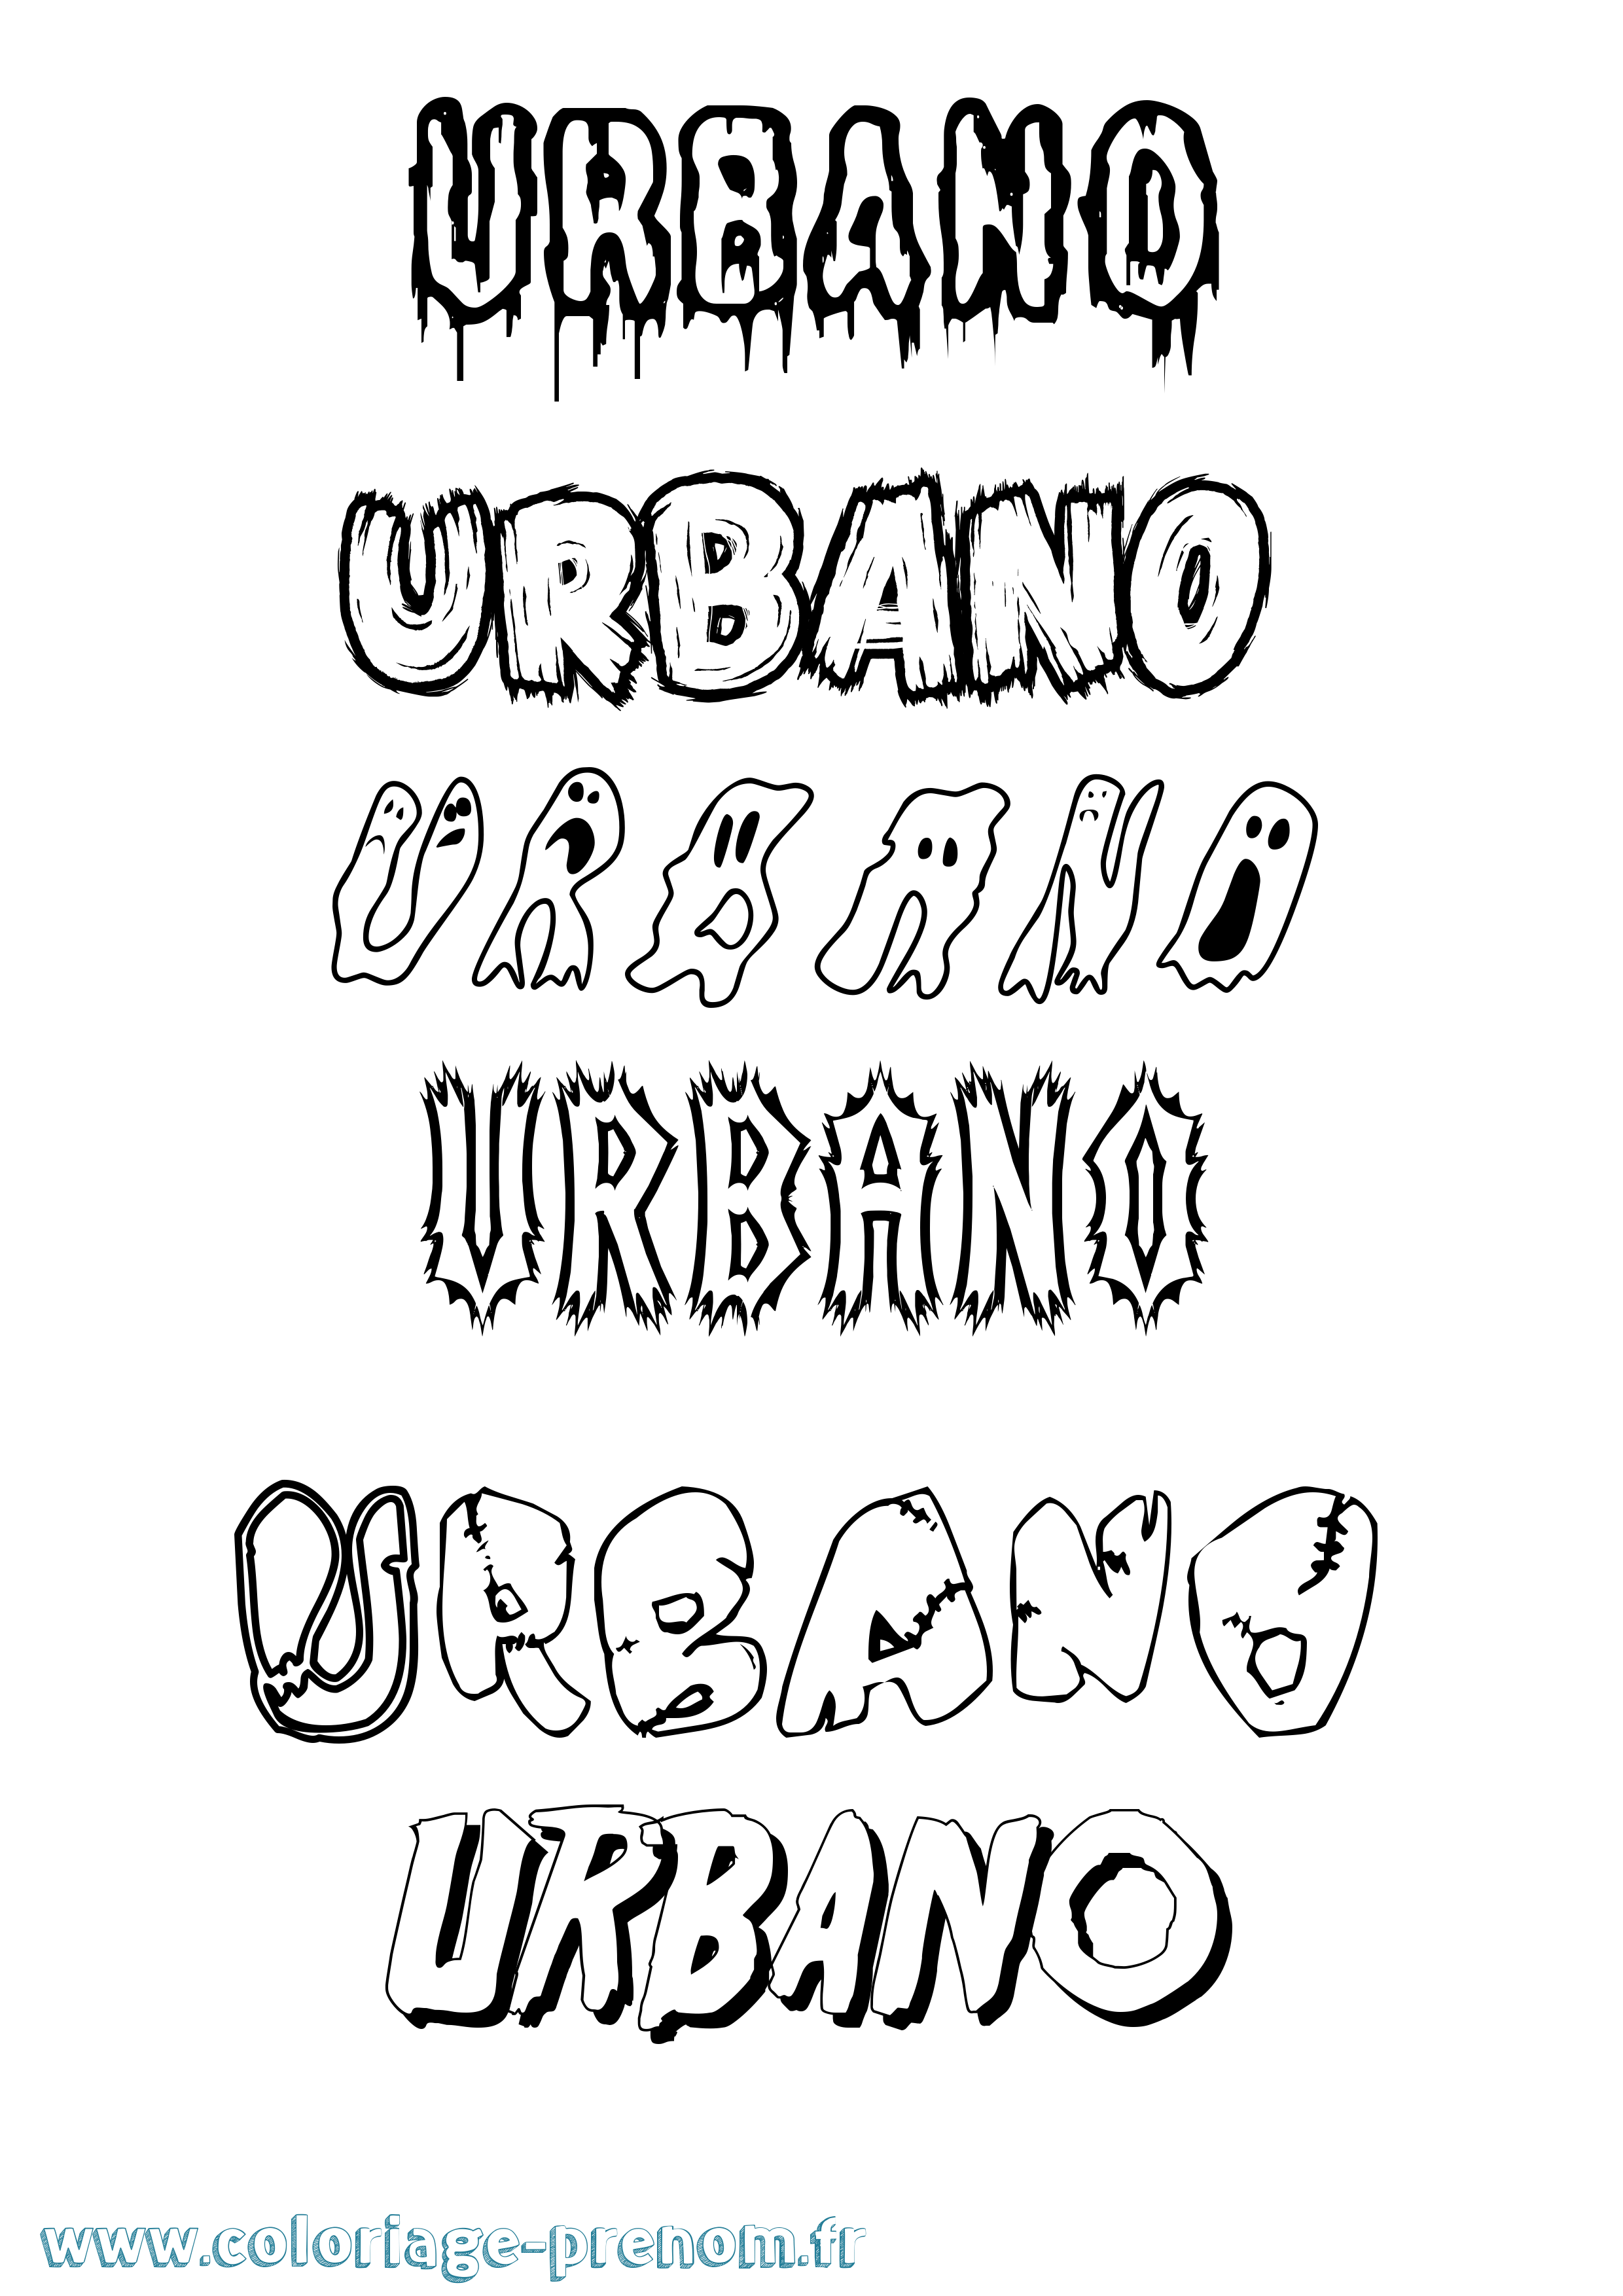 Coloriage prénom Urbano Frisson